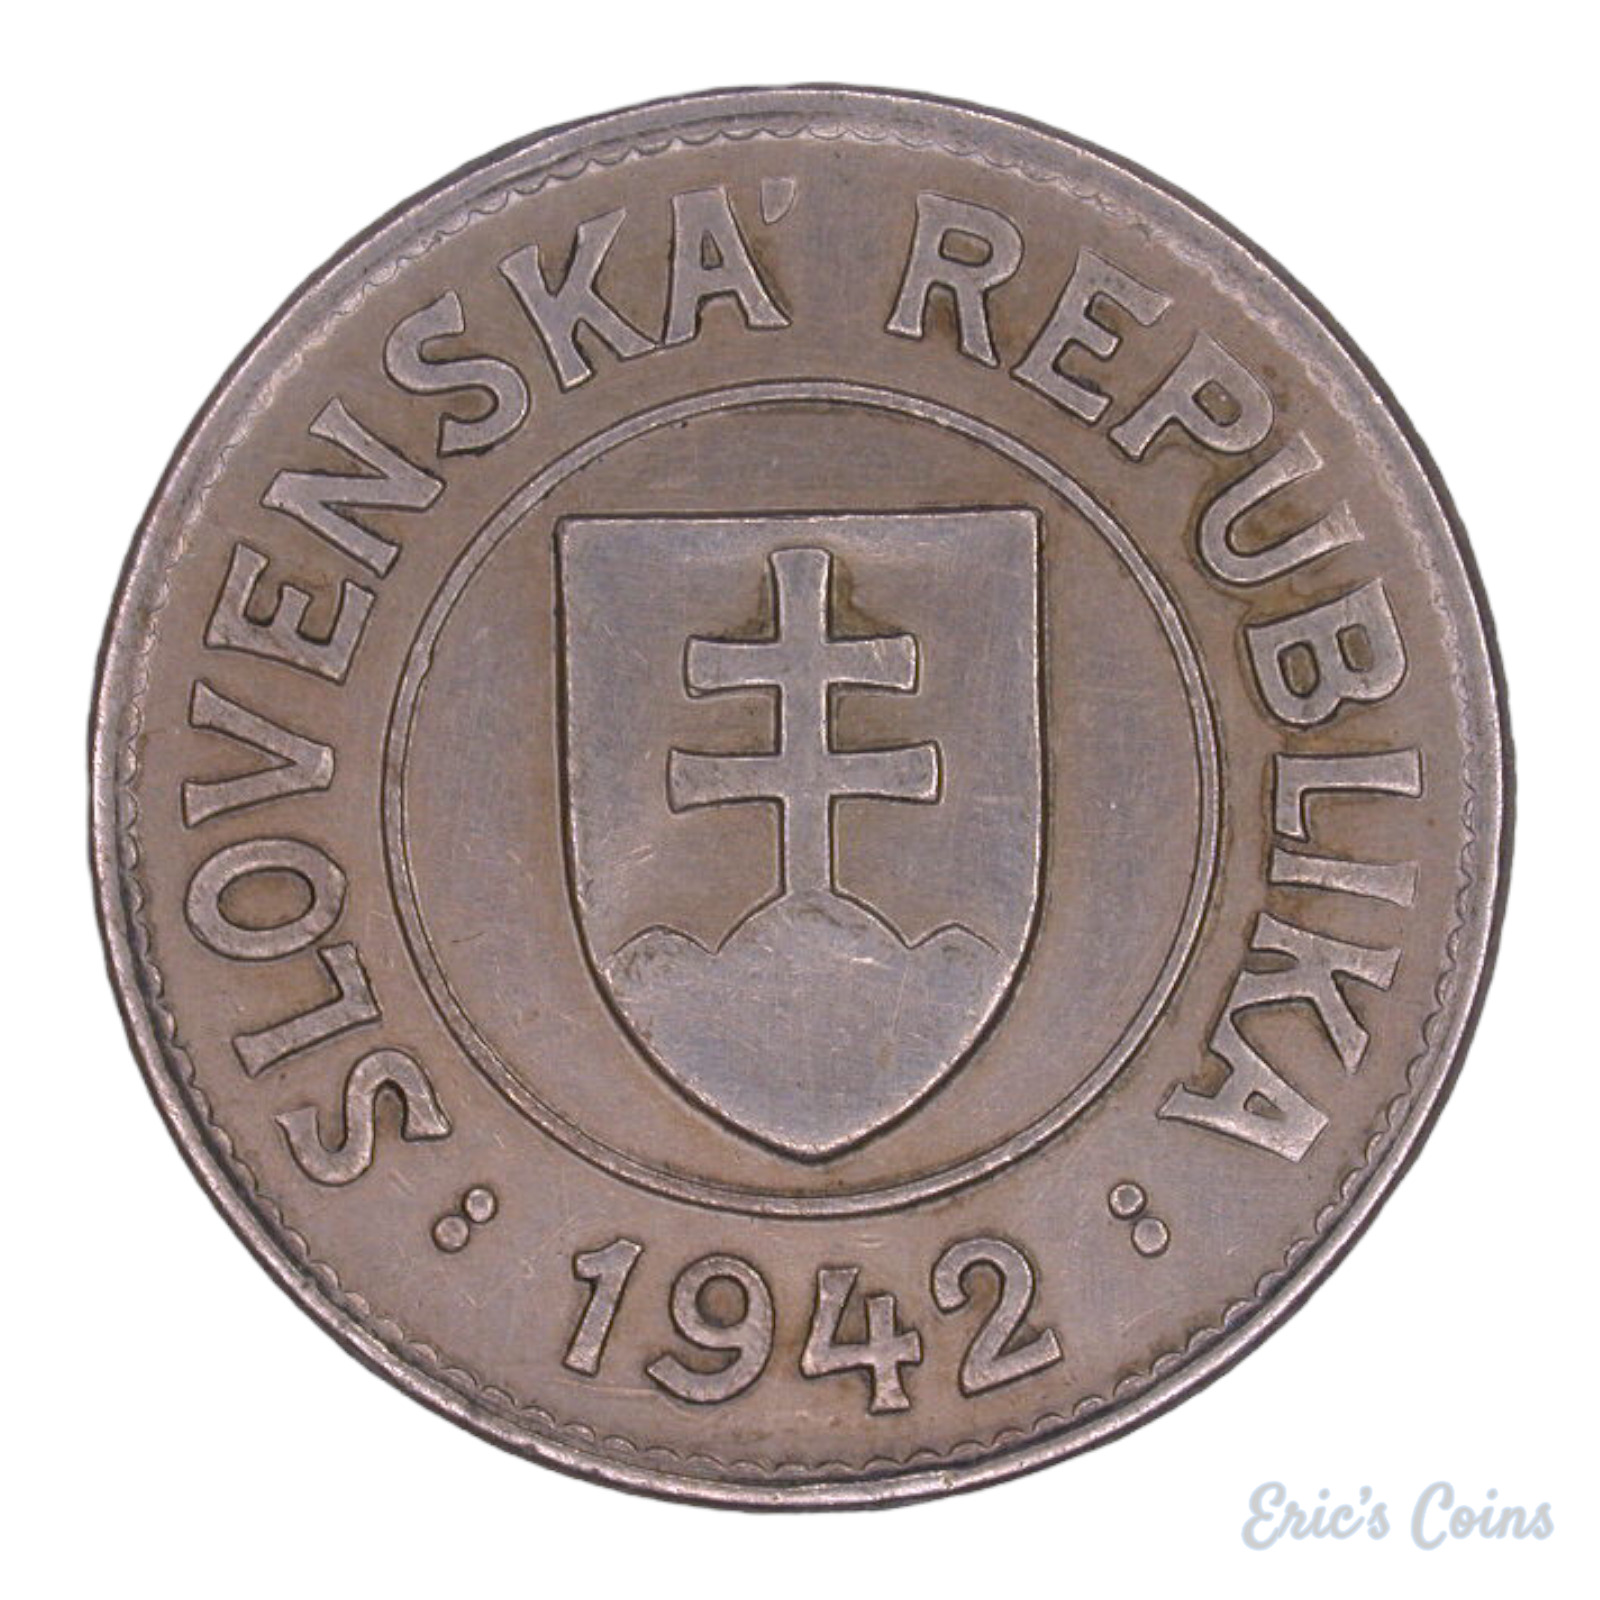 Slovakia 1942 1 Koruna